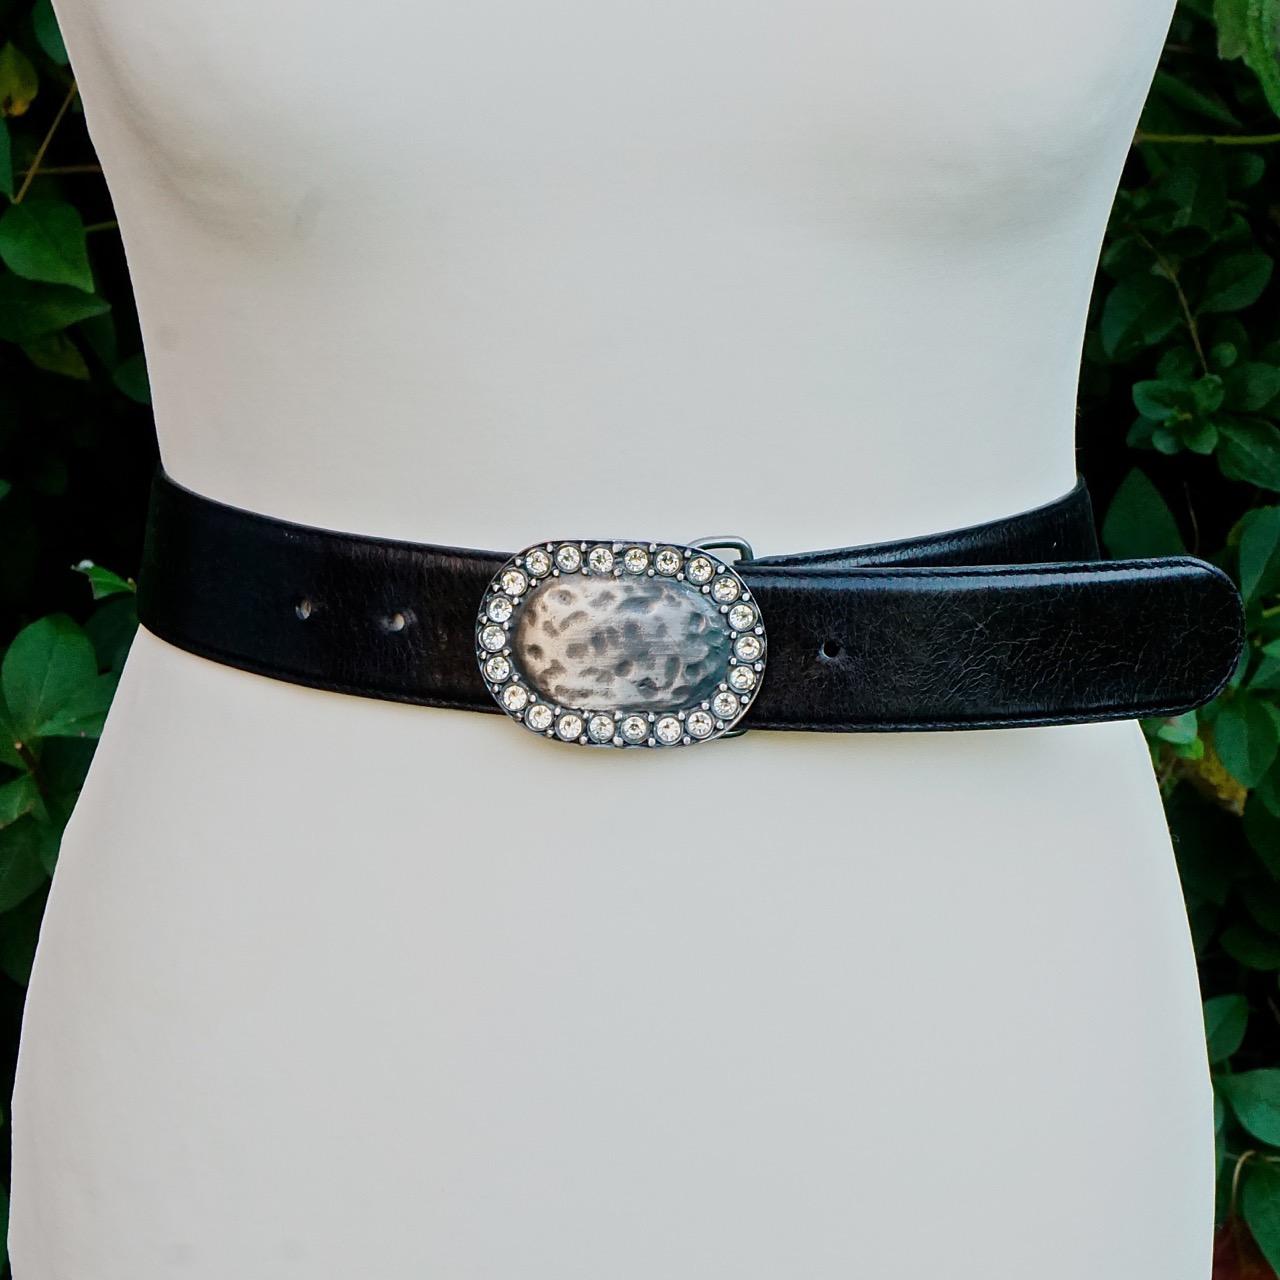 Schwarzer Ledergürtel von Clara Perri mit einer schönen ovalen, silberfarbenen Schnalle, die mit klaren Kristallen besetzt ist. Der Gürtel ist verstellbar, von einer tragbaren Länge von 103cm / 40.5 inches bis 90cm / 90.5 inches  35.4 Zoll, und die